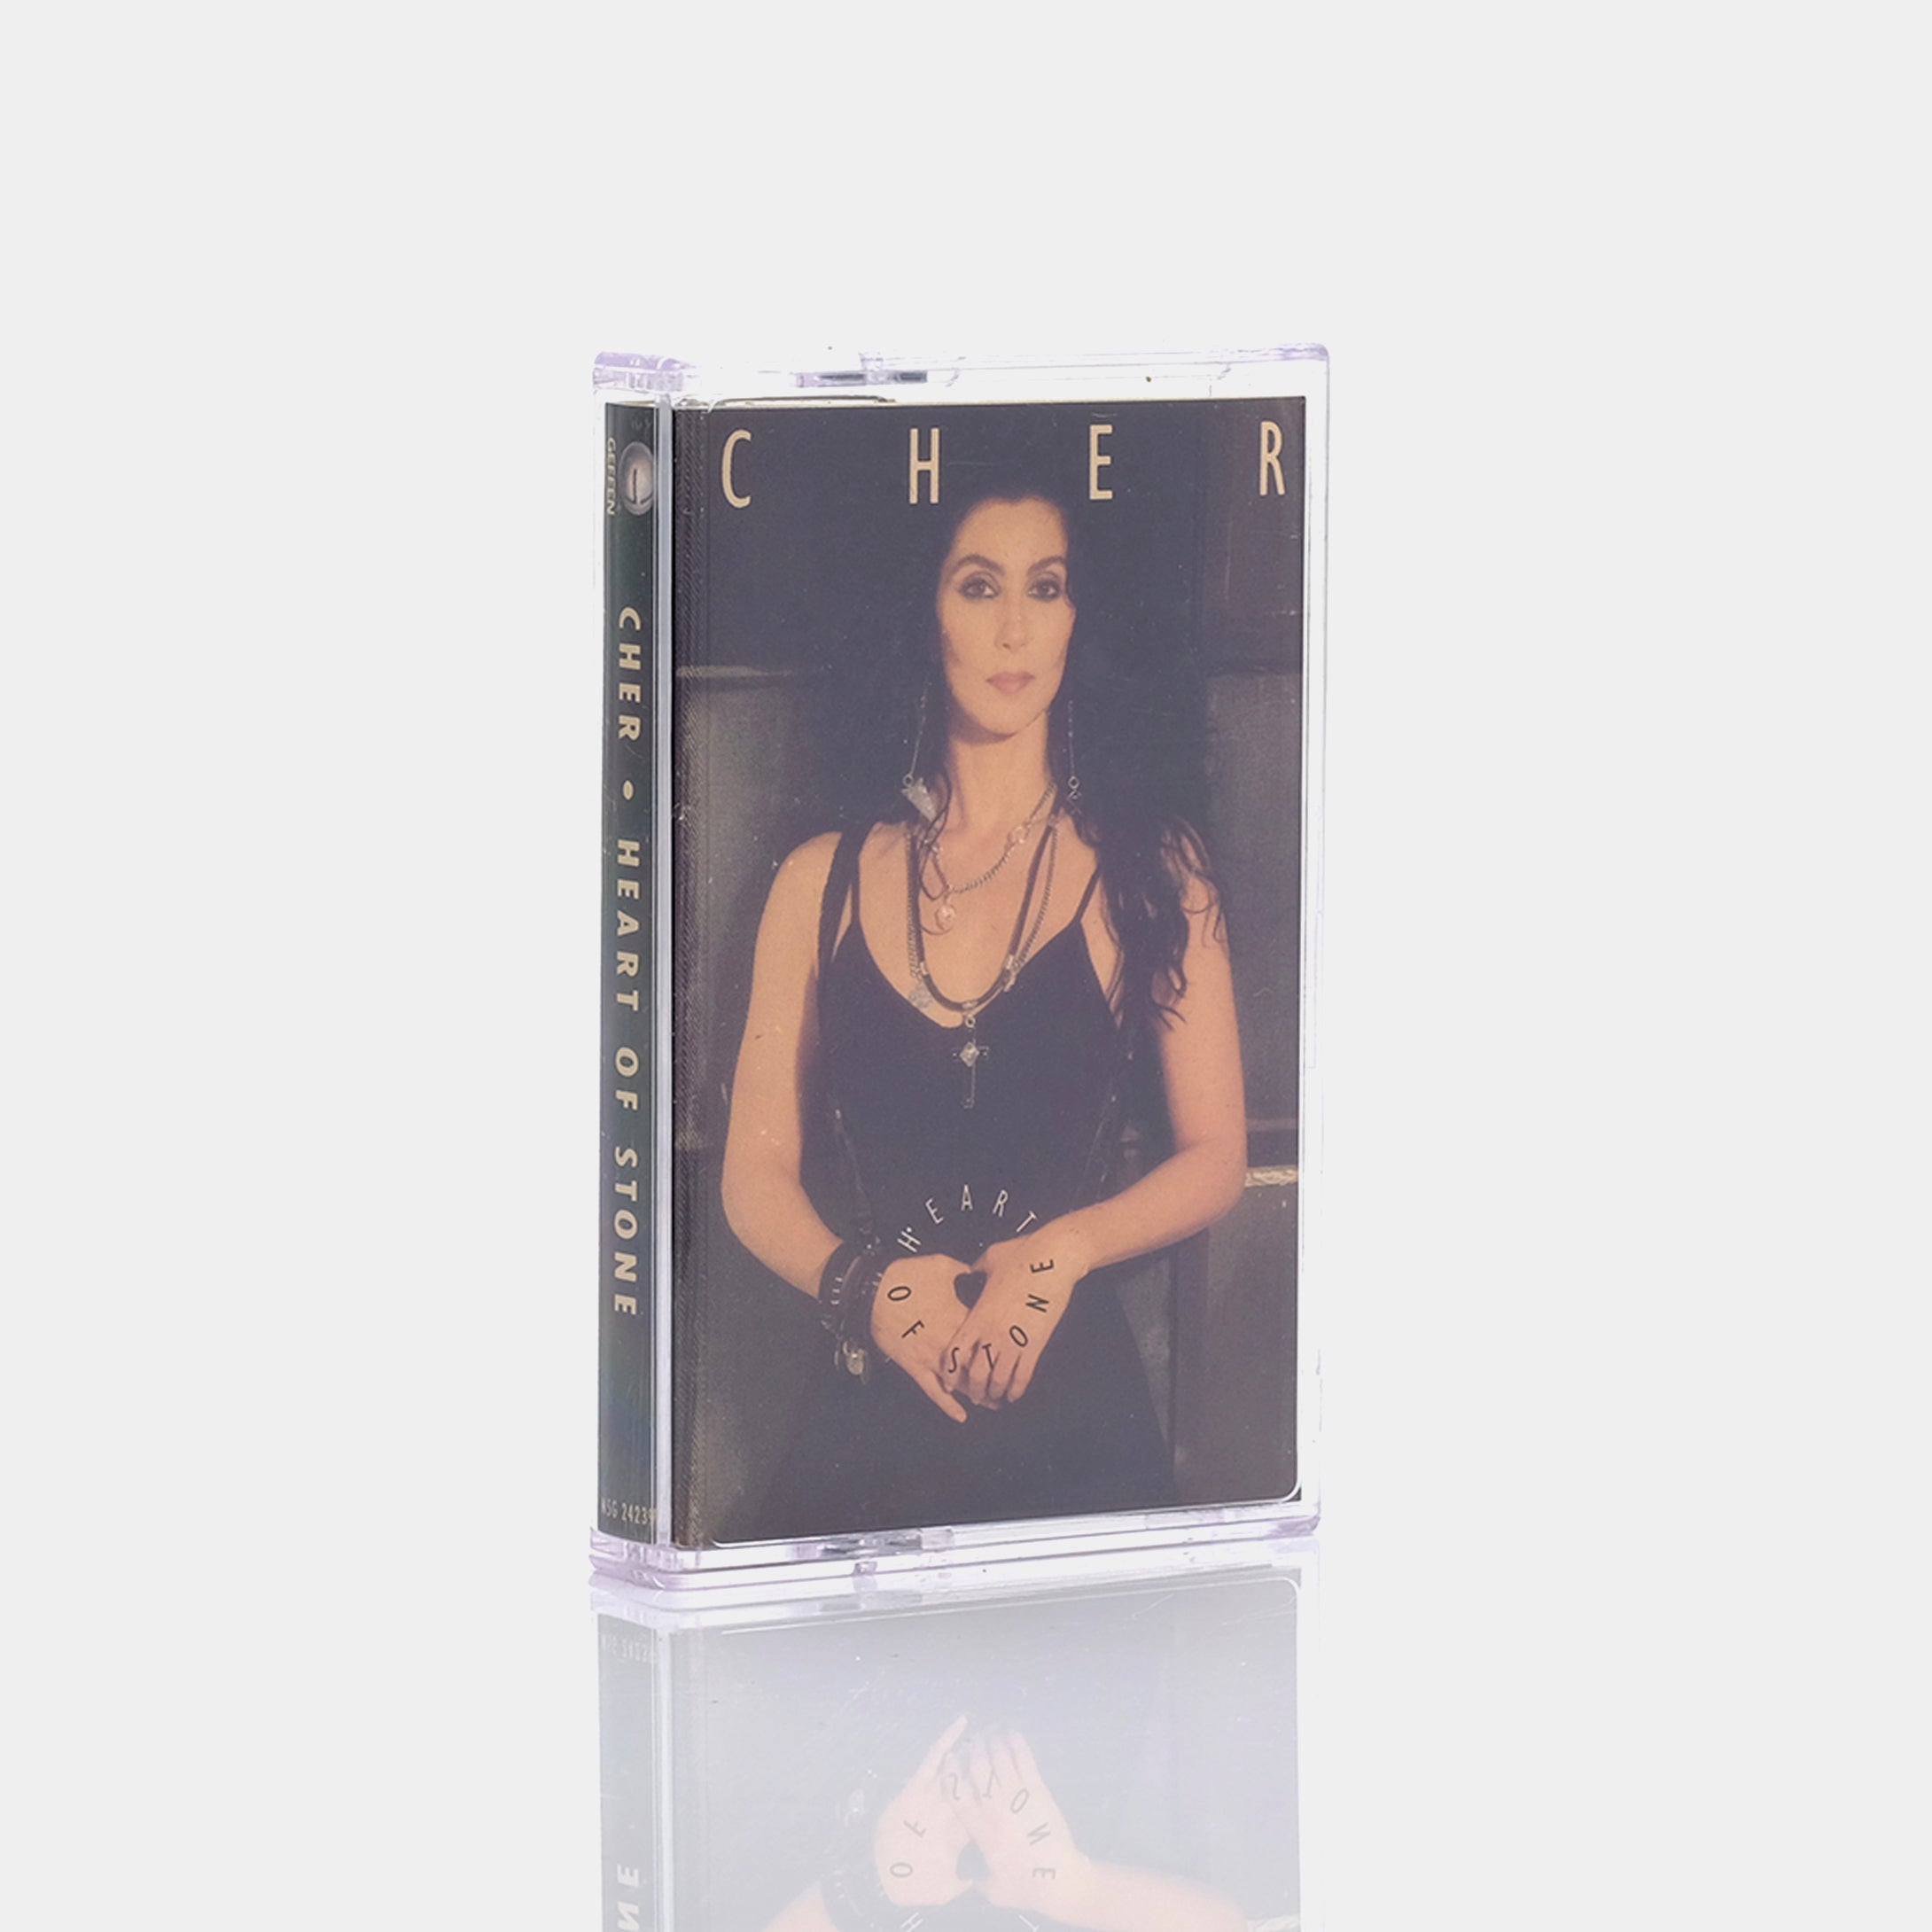 Cher - Heart of Stone Cassette Tape